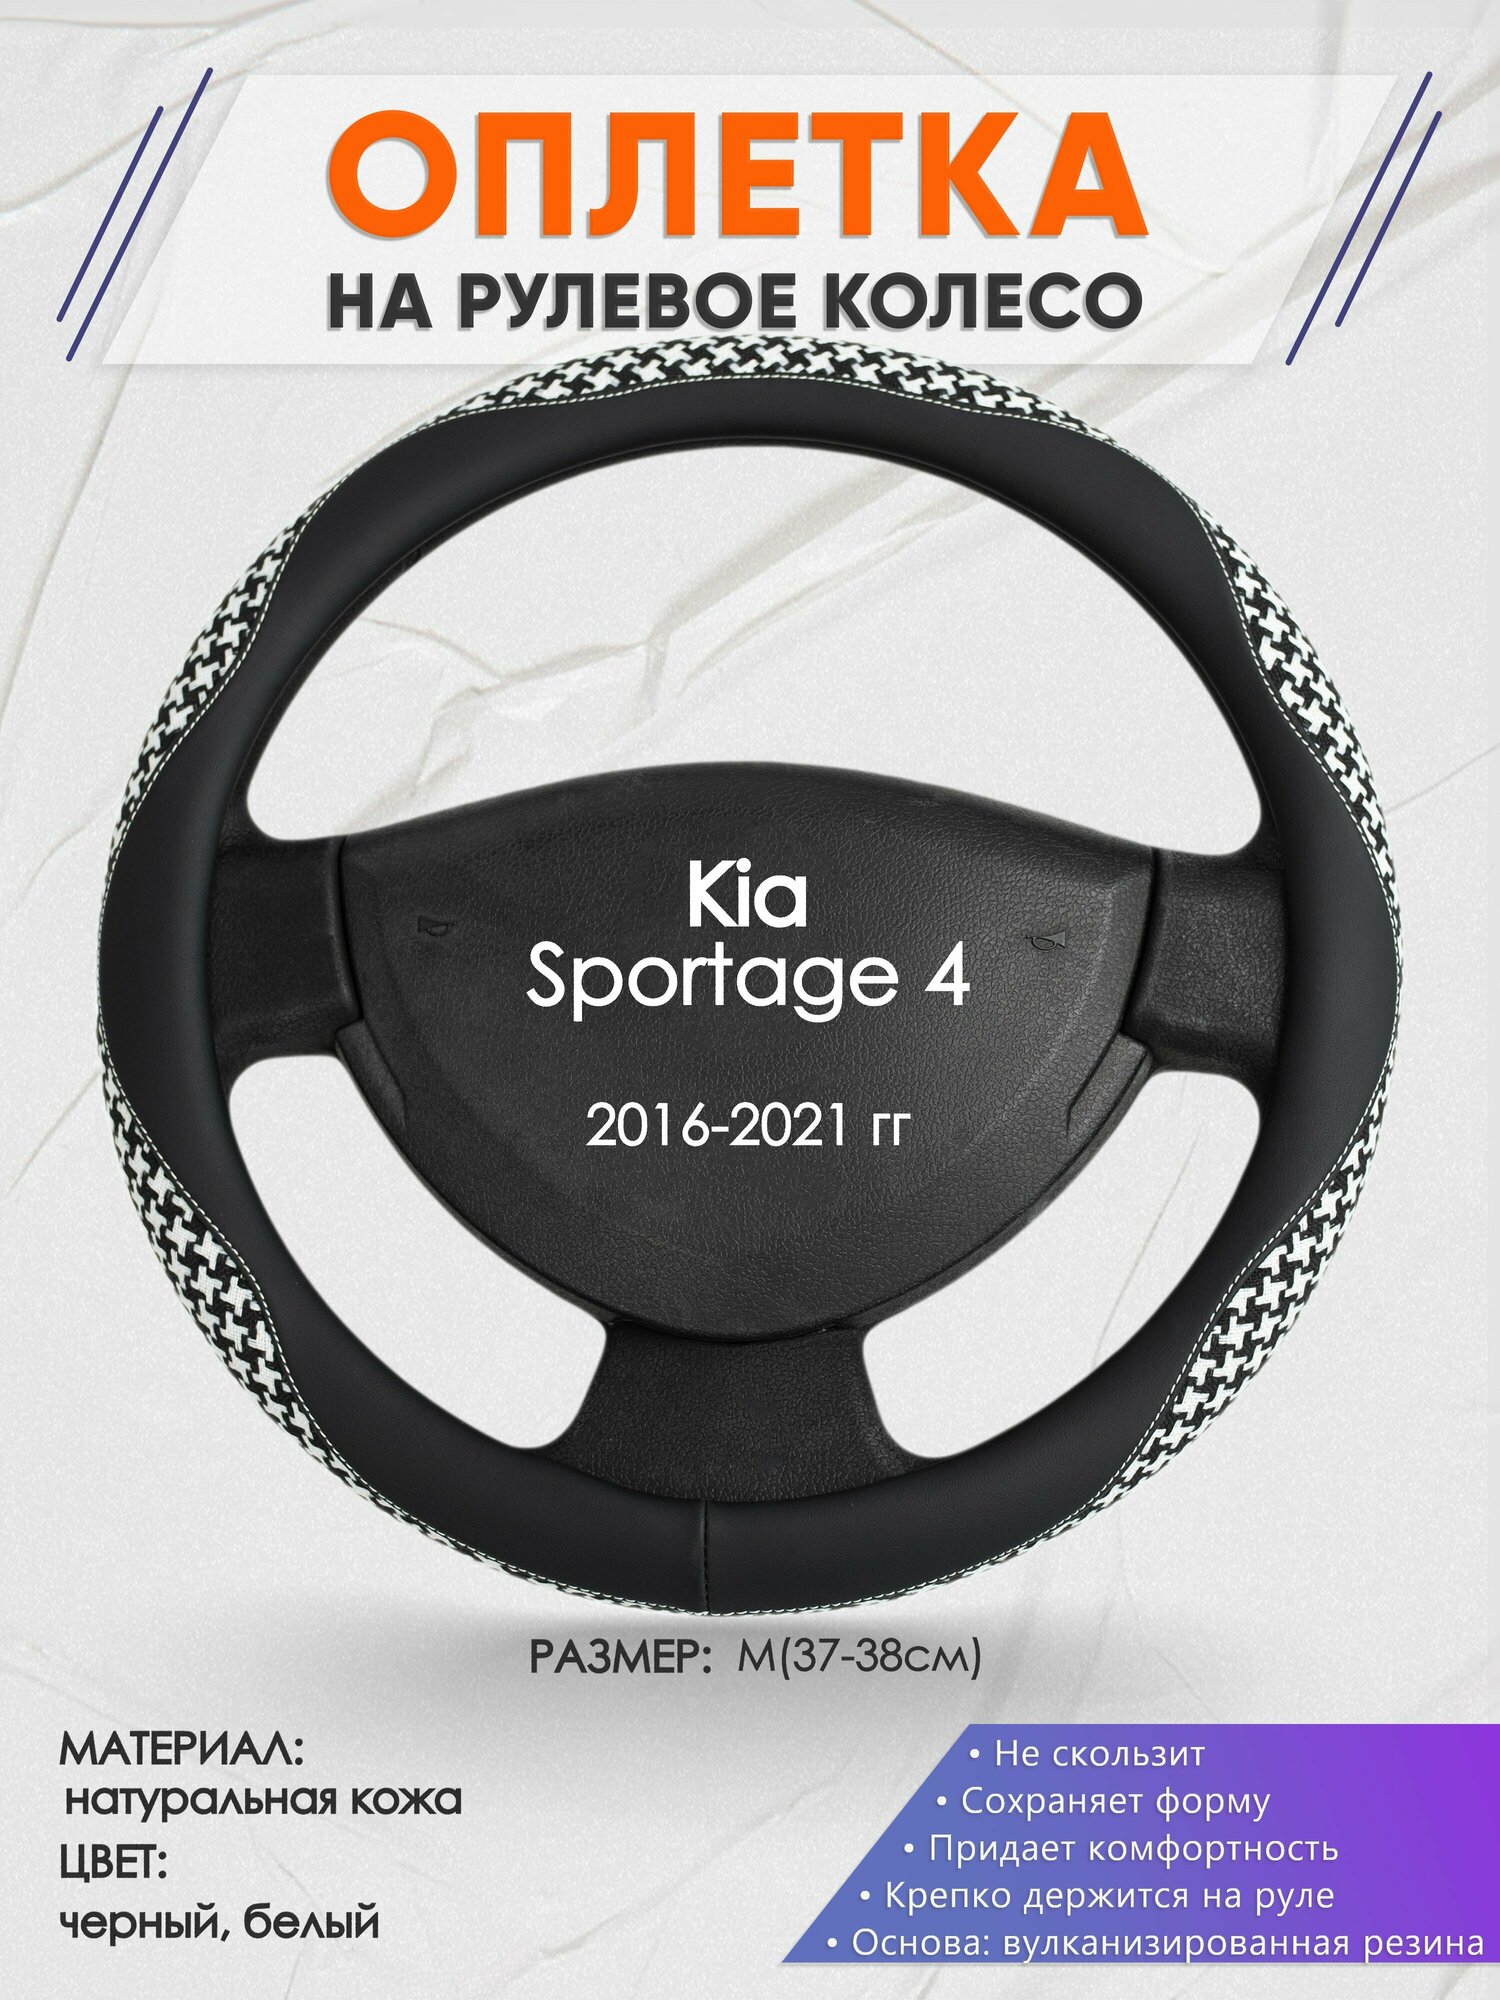 Оплетка на руль для Kia Sportage 4(Киа Спортейдж 4) 2016-2021, M(37-38см), Натуральная кожа 21